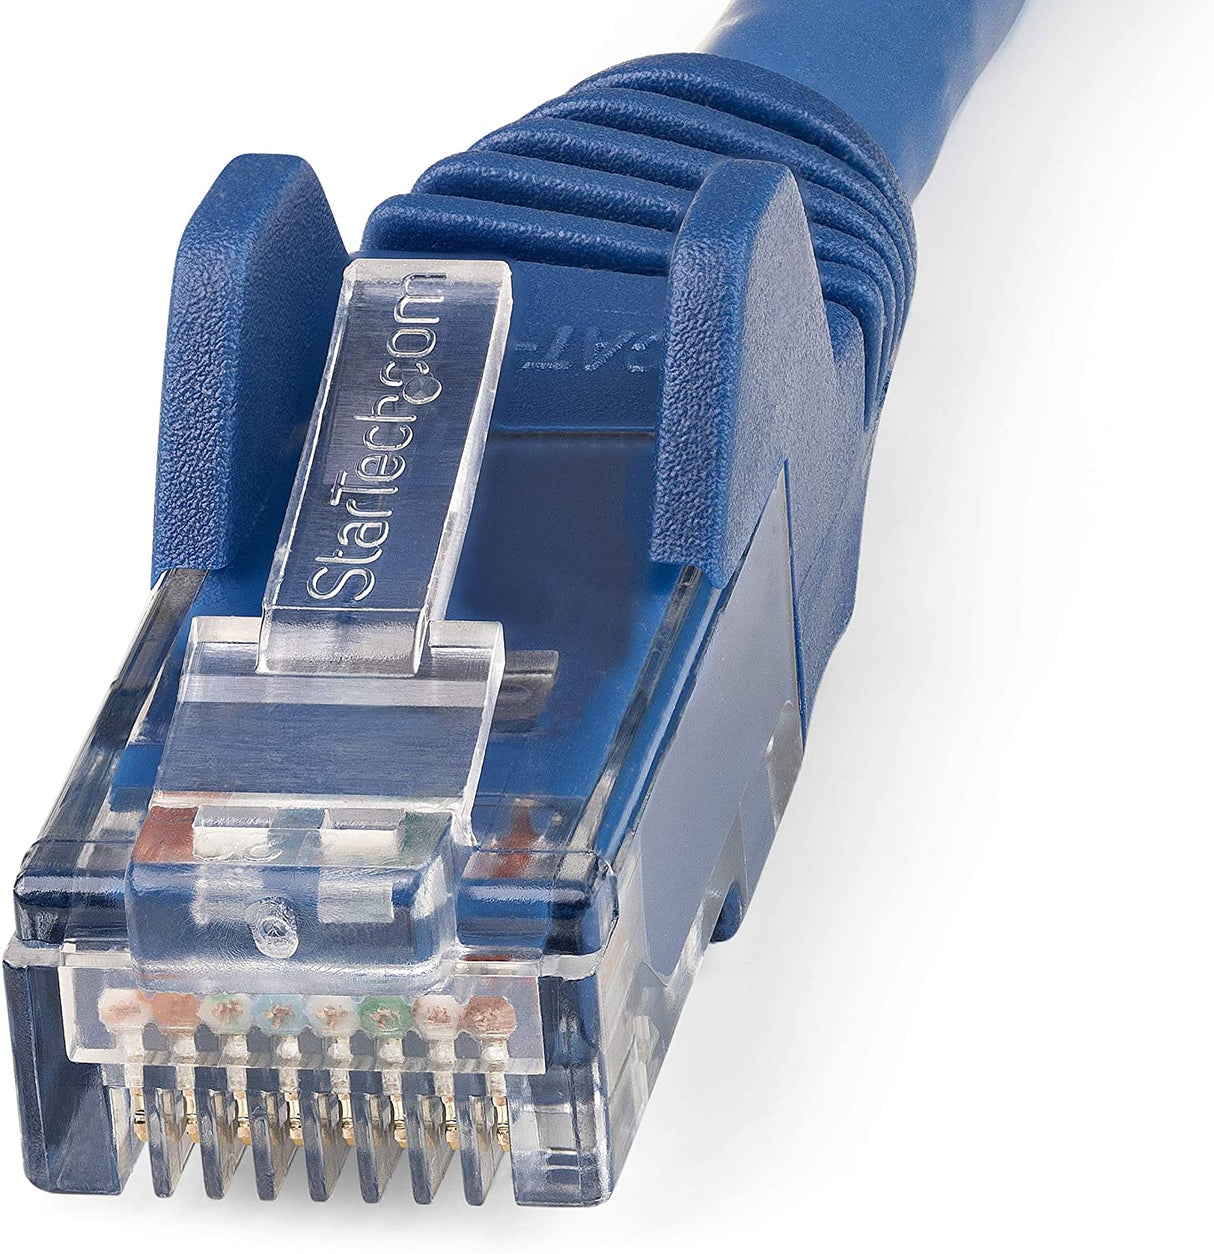 StarTech.com 20ft (6m) CAT6 Ethernet Cable - LSZH (Low Smoke Zero Halogen) - 10 Gigabit 650MHz 100W PoE RJ45 UTP Network Patch Cord Snagless w/Strain Relief - Blue CAT 6, ETL Verified (N6LPATCH20BL) 20 ft Blue